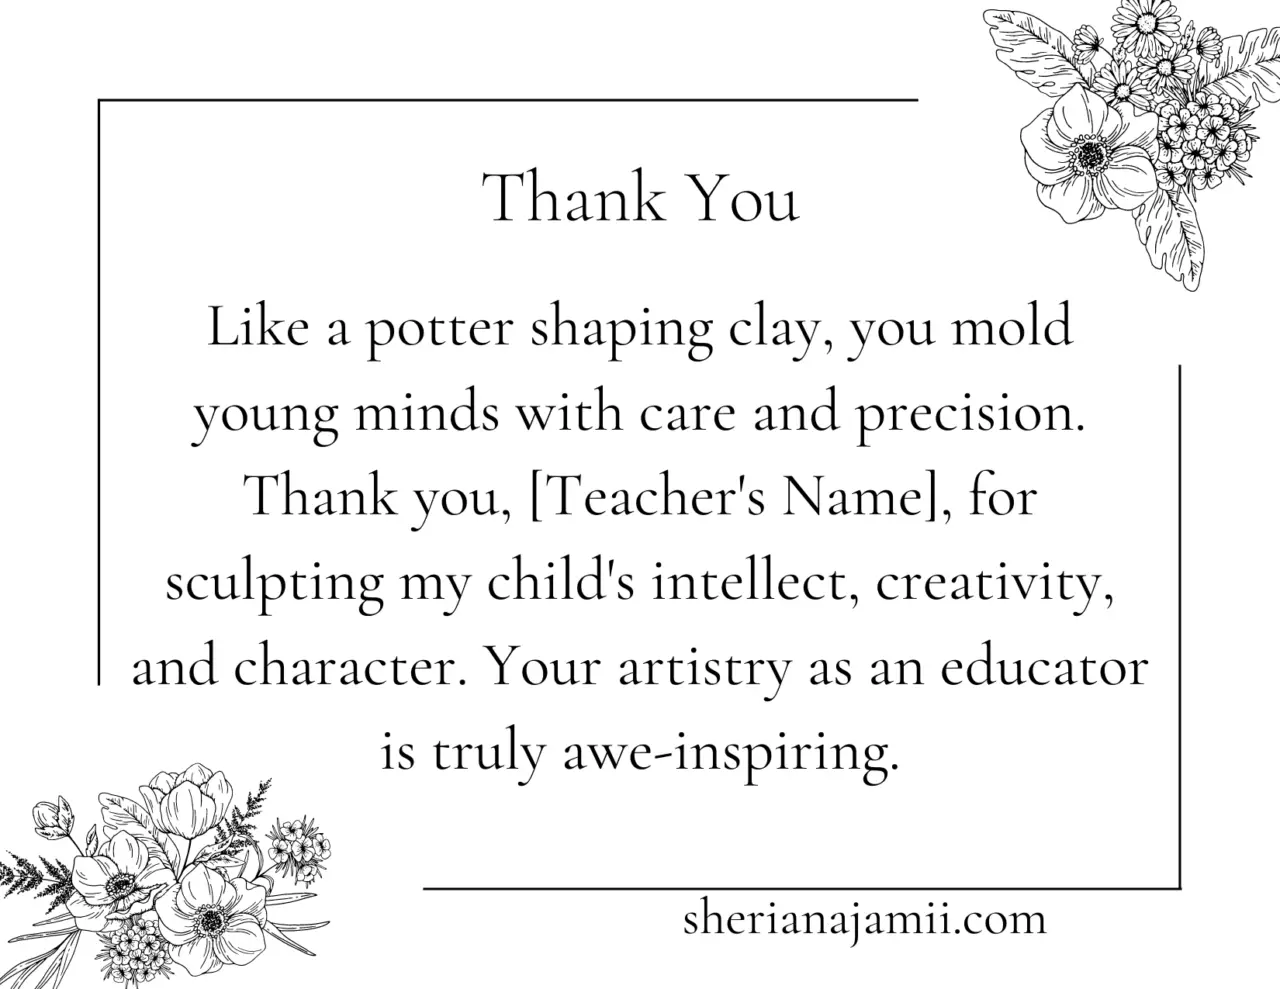 teacher thank you note from a parent, teacher thank you notes from parents, short teacher thank you notes from parents